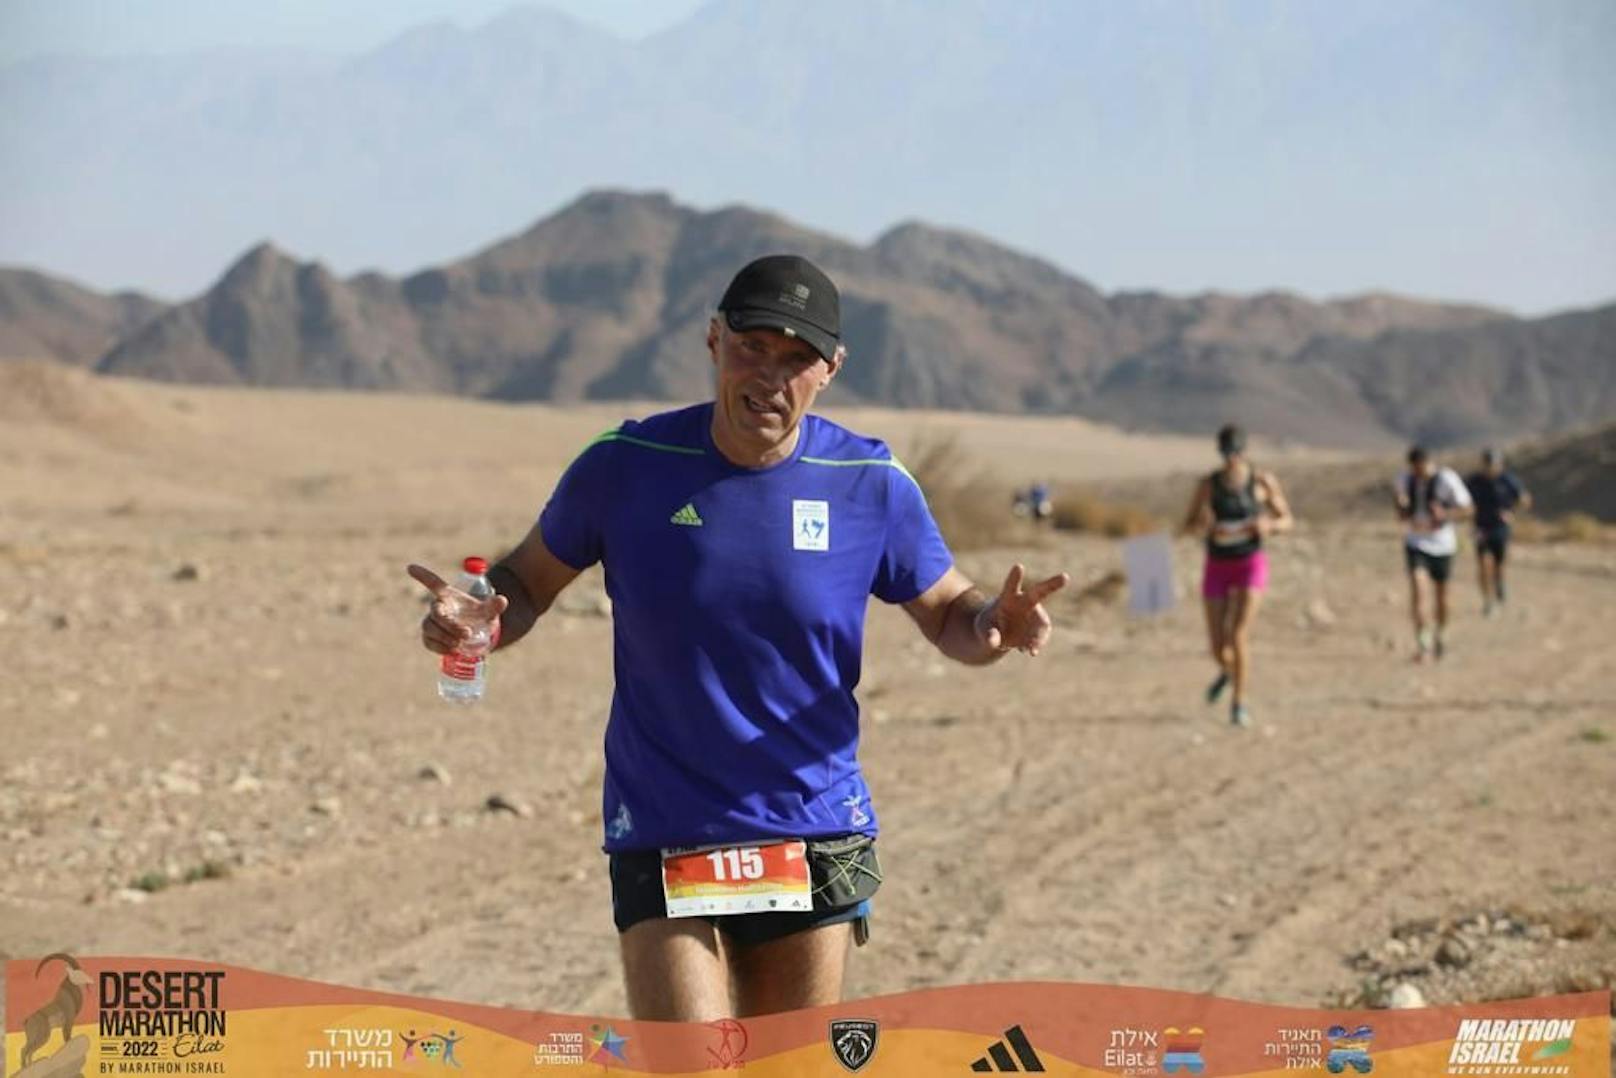 Extrem! Wiener Topanwalt lief Marathon durch die Wüste